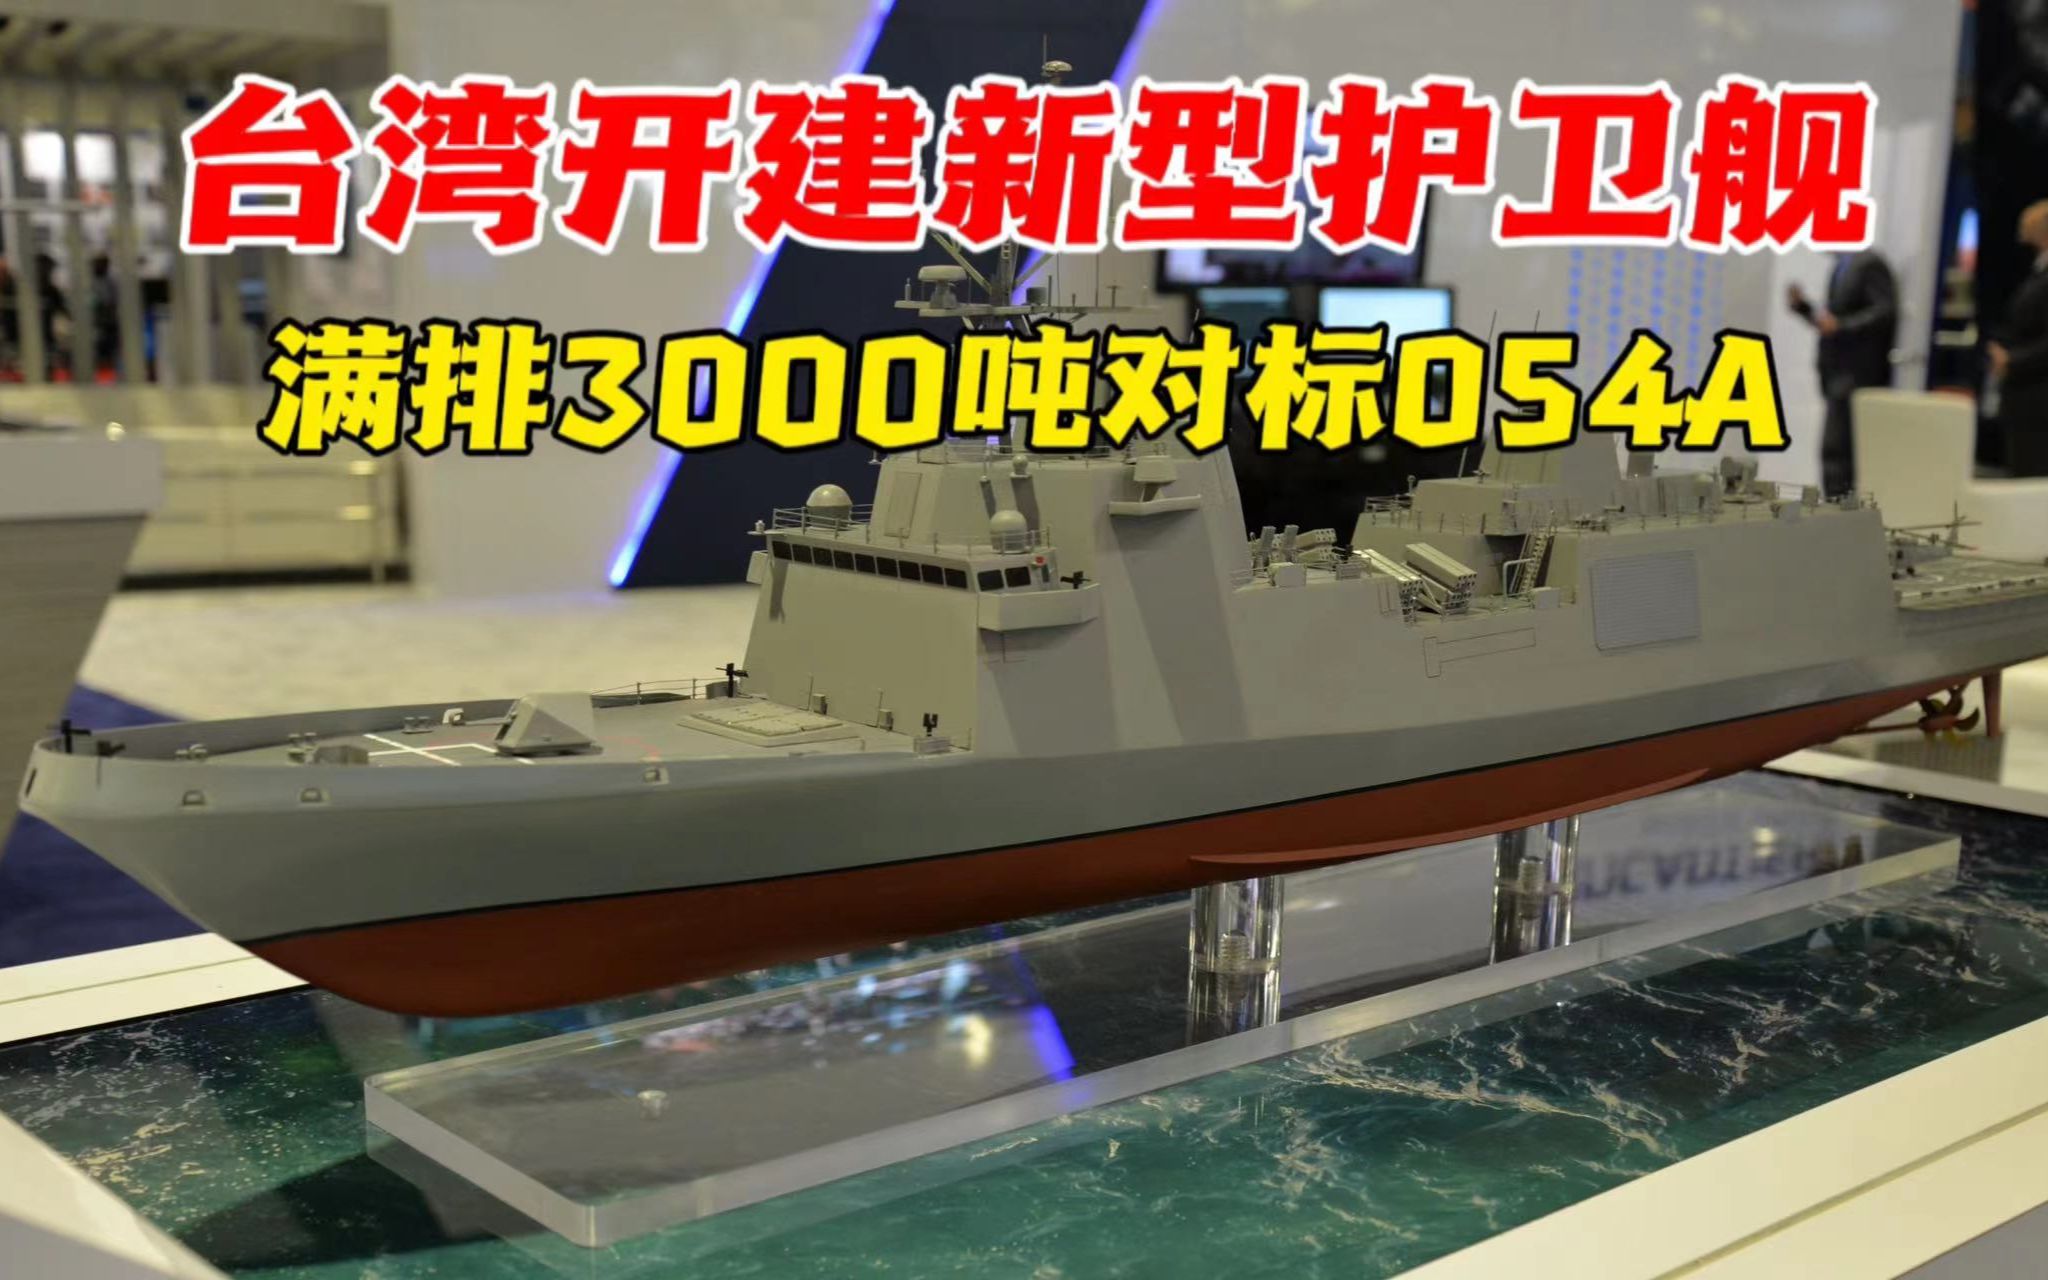 台湾新型护卫舰2026年下水对标054A，时间把握得非常好